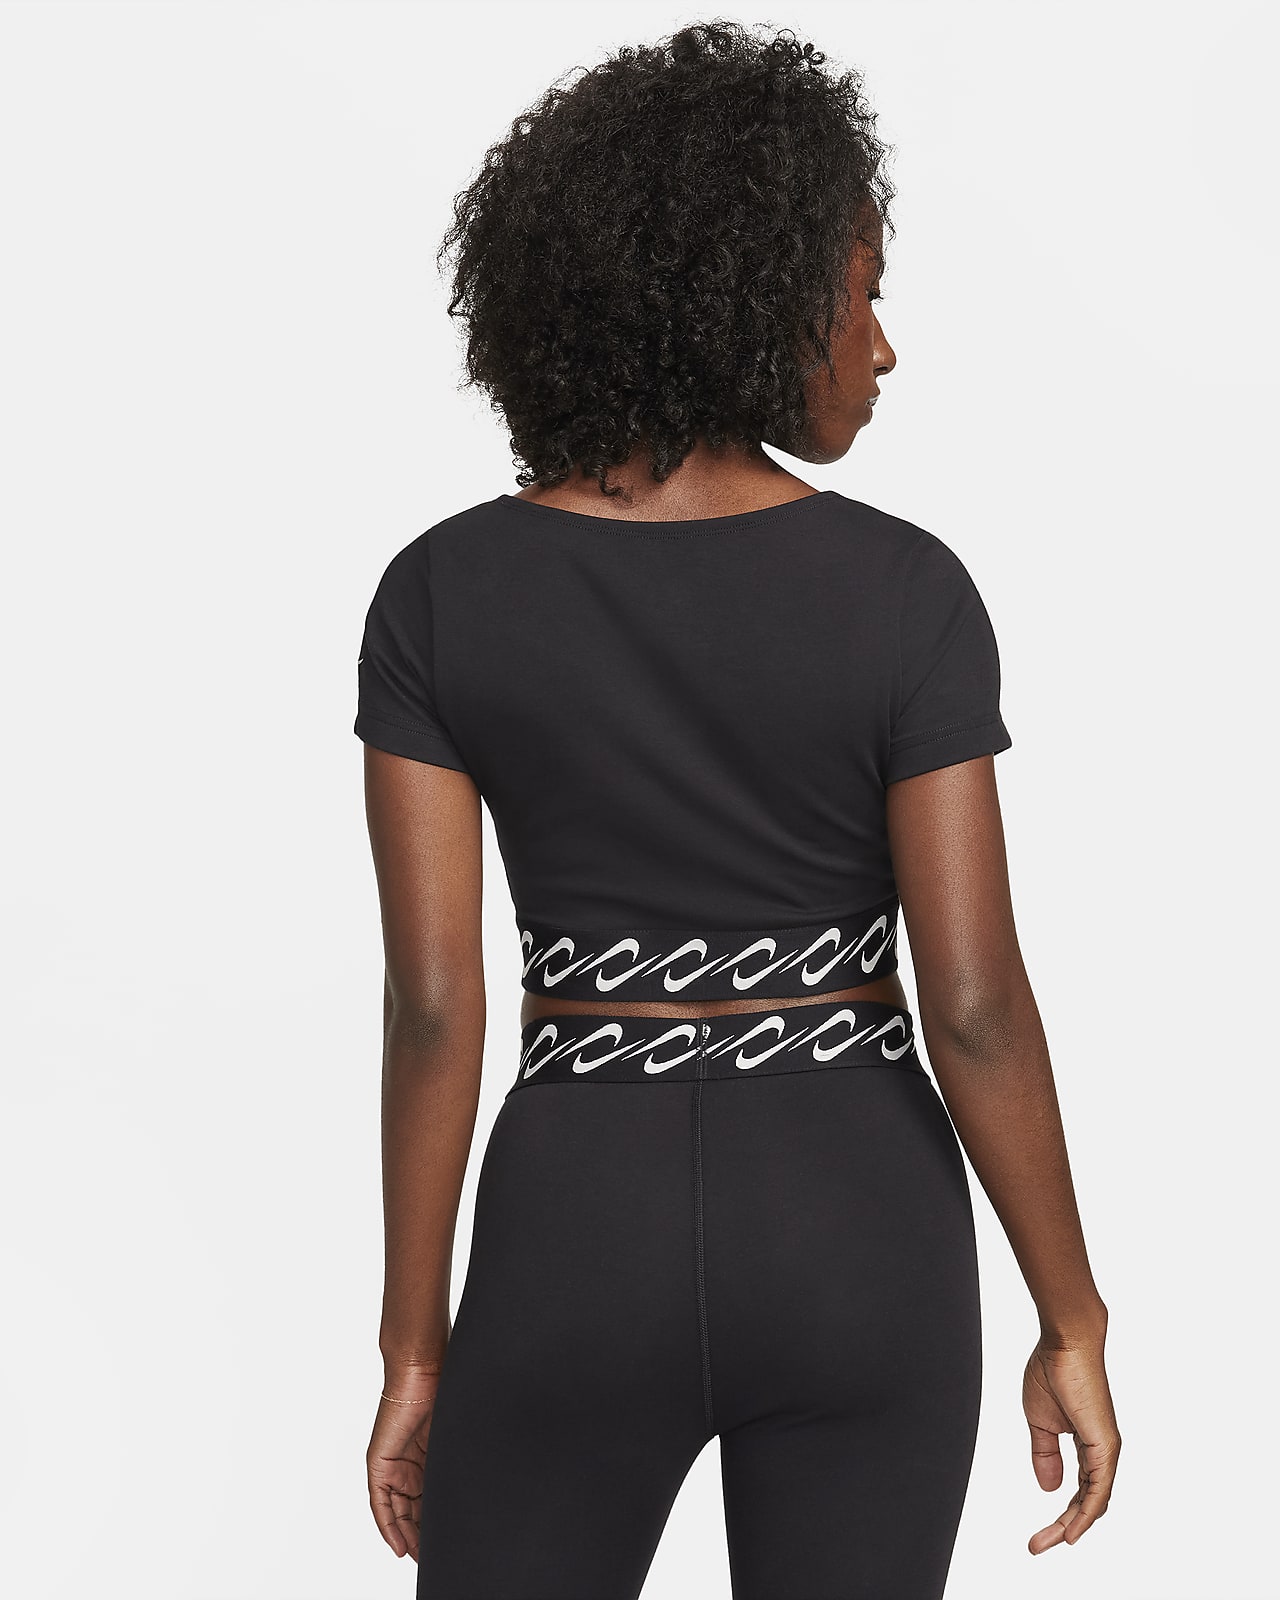 Nike Sportswear Essential Swoosh Women's Short-Sleeve Top.